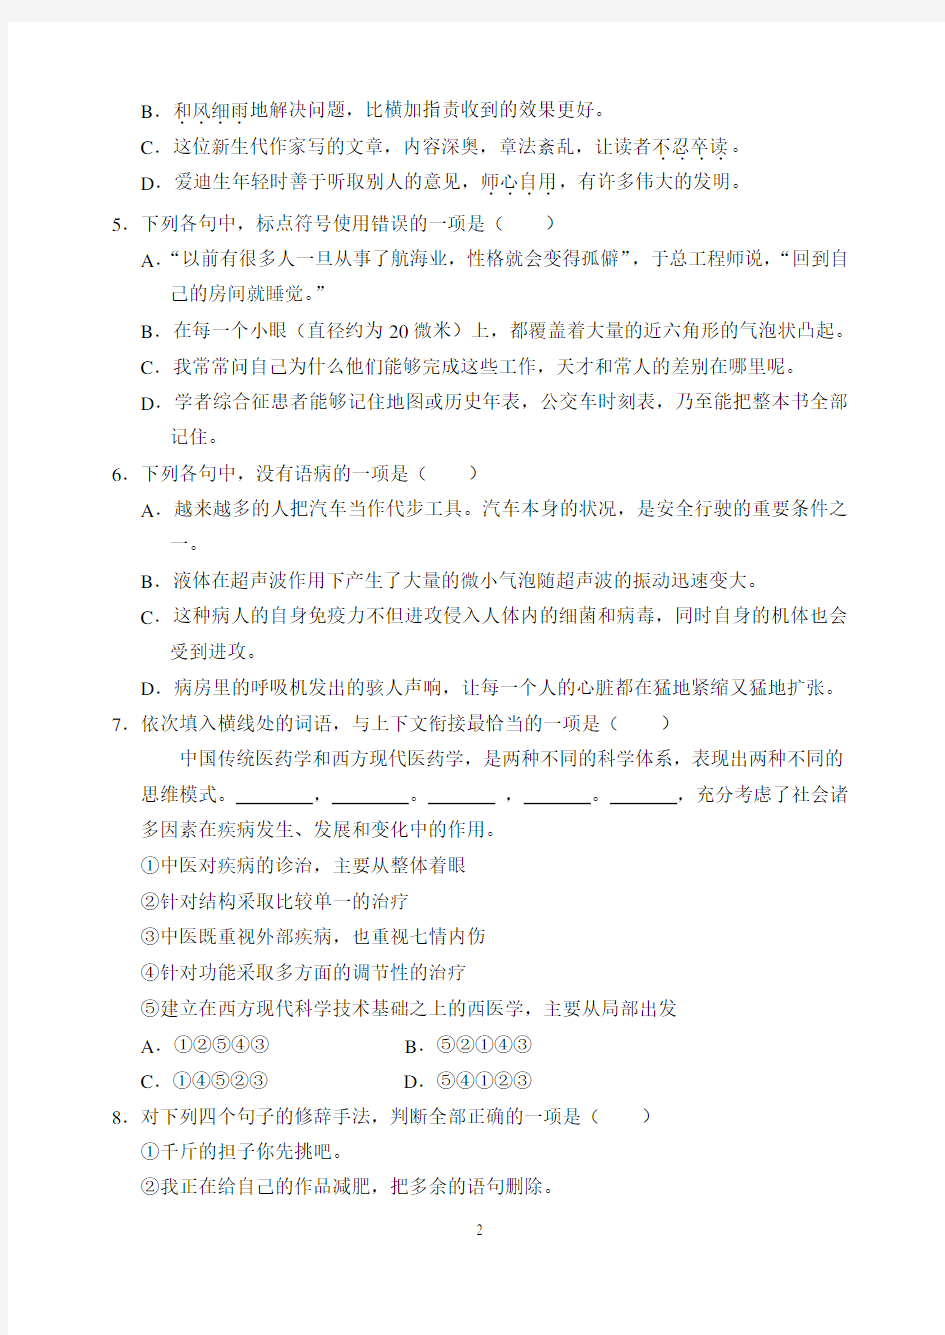 2017年河北省普通高等学校对口招生考试试题及答案2017.11.23